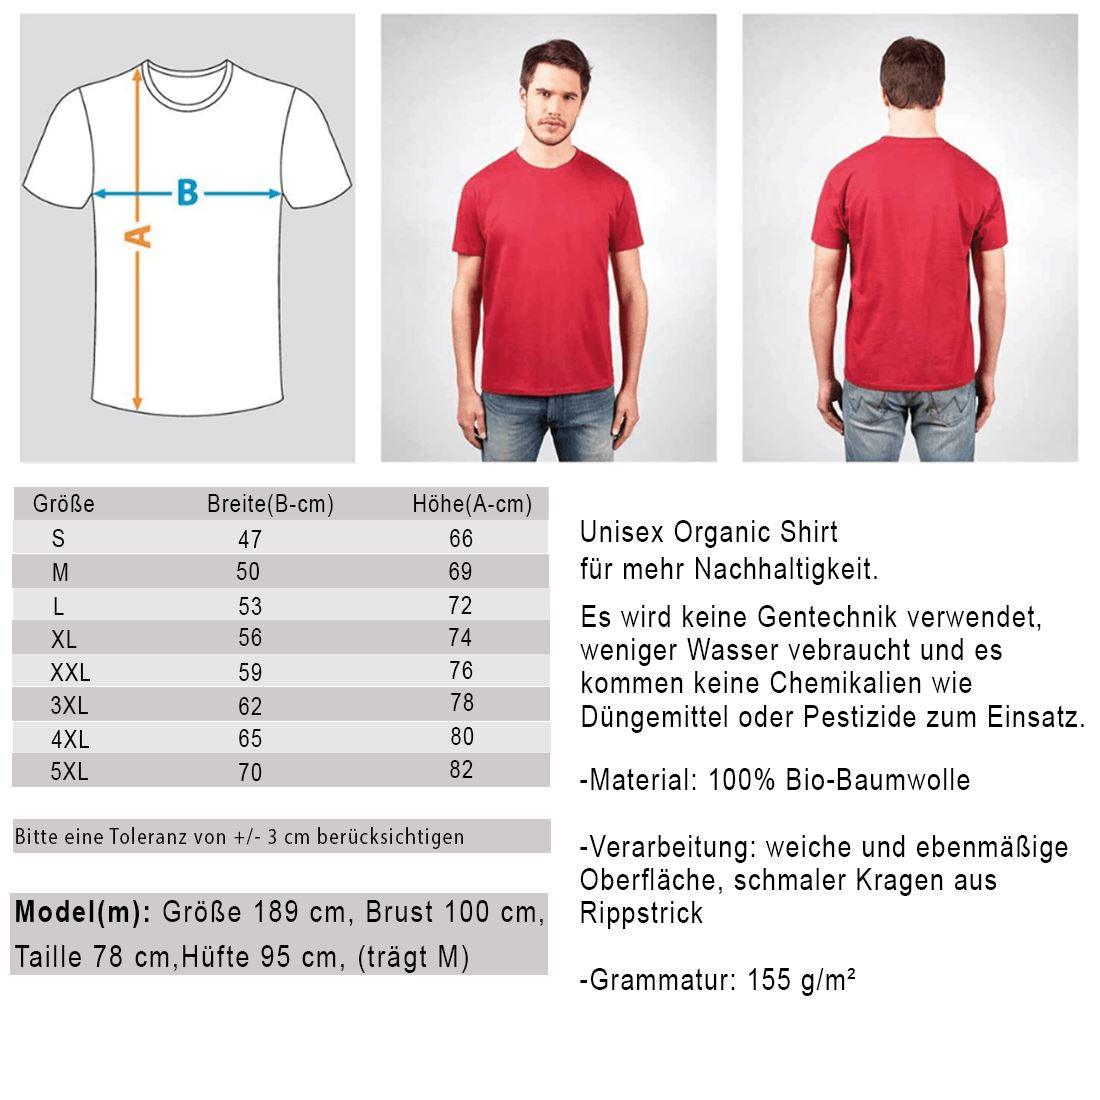 Lebenshof Hofnarr - Unisex Organic Shirt - Team Vegan © vegan t shirt